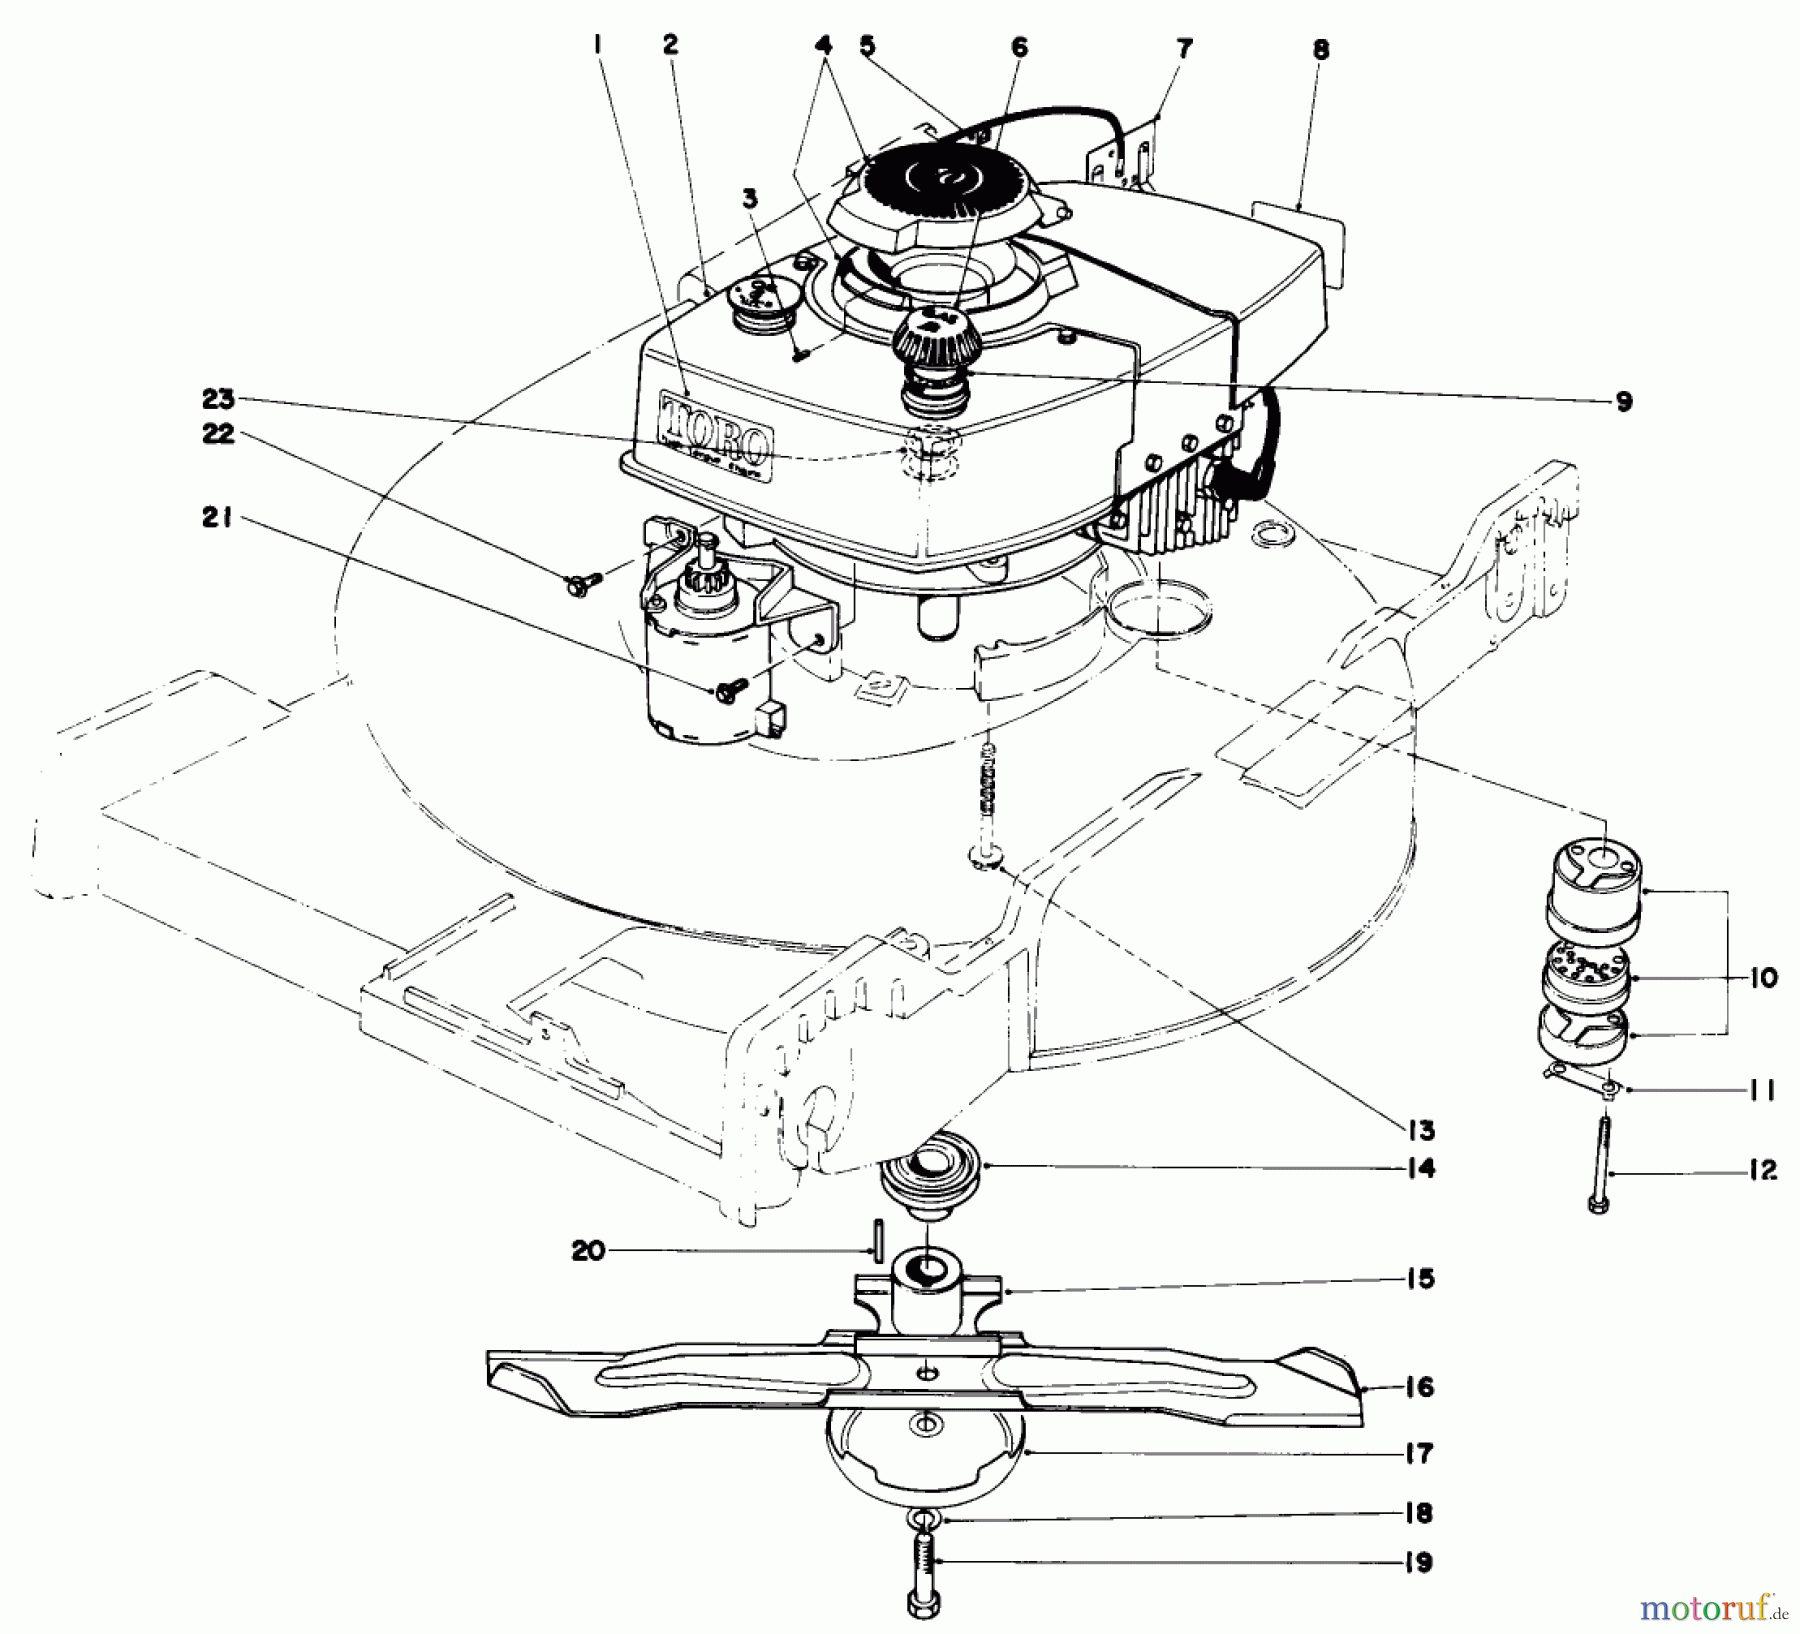  Toro Neu Mowers, Walk-Behind Seite 1 20562 - Toro Lawnmower, 1977 (7000001-7999999) ENGINE ASSEMBLY (MODEL NO. 20673)